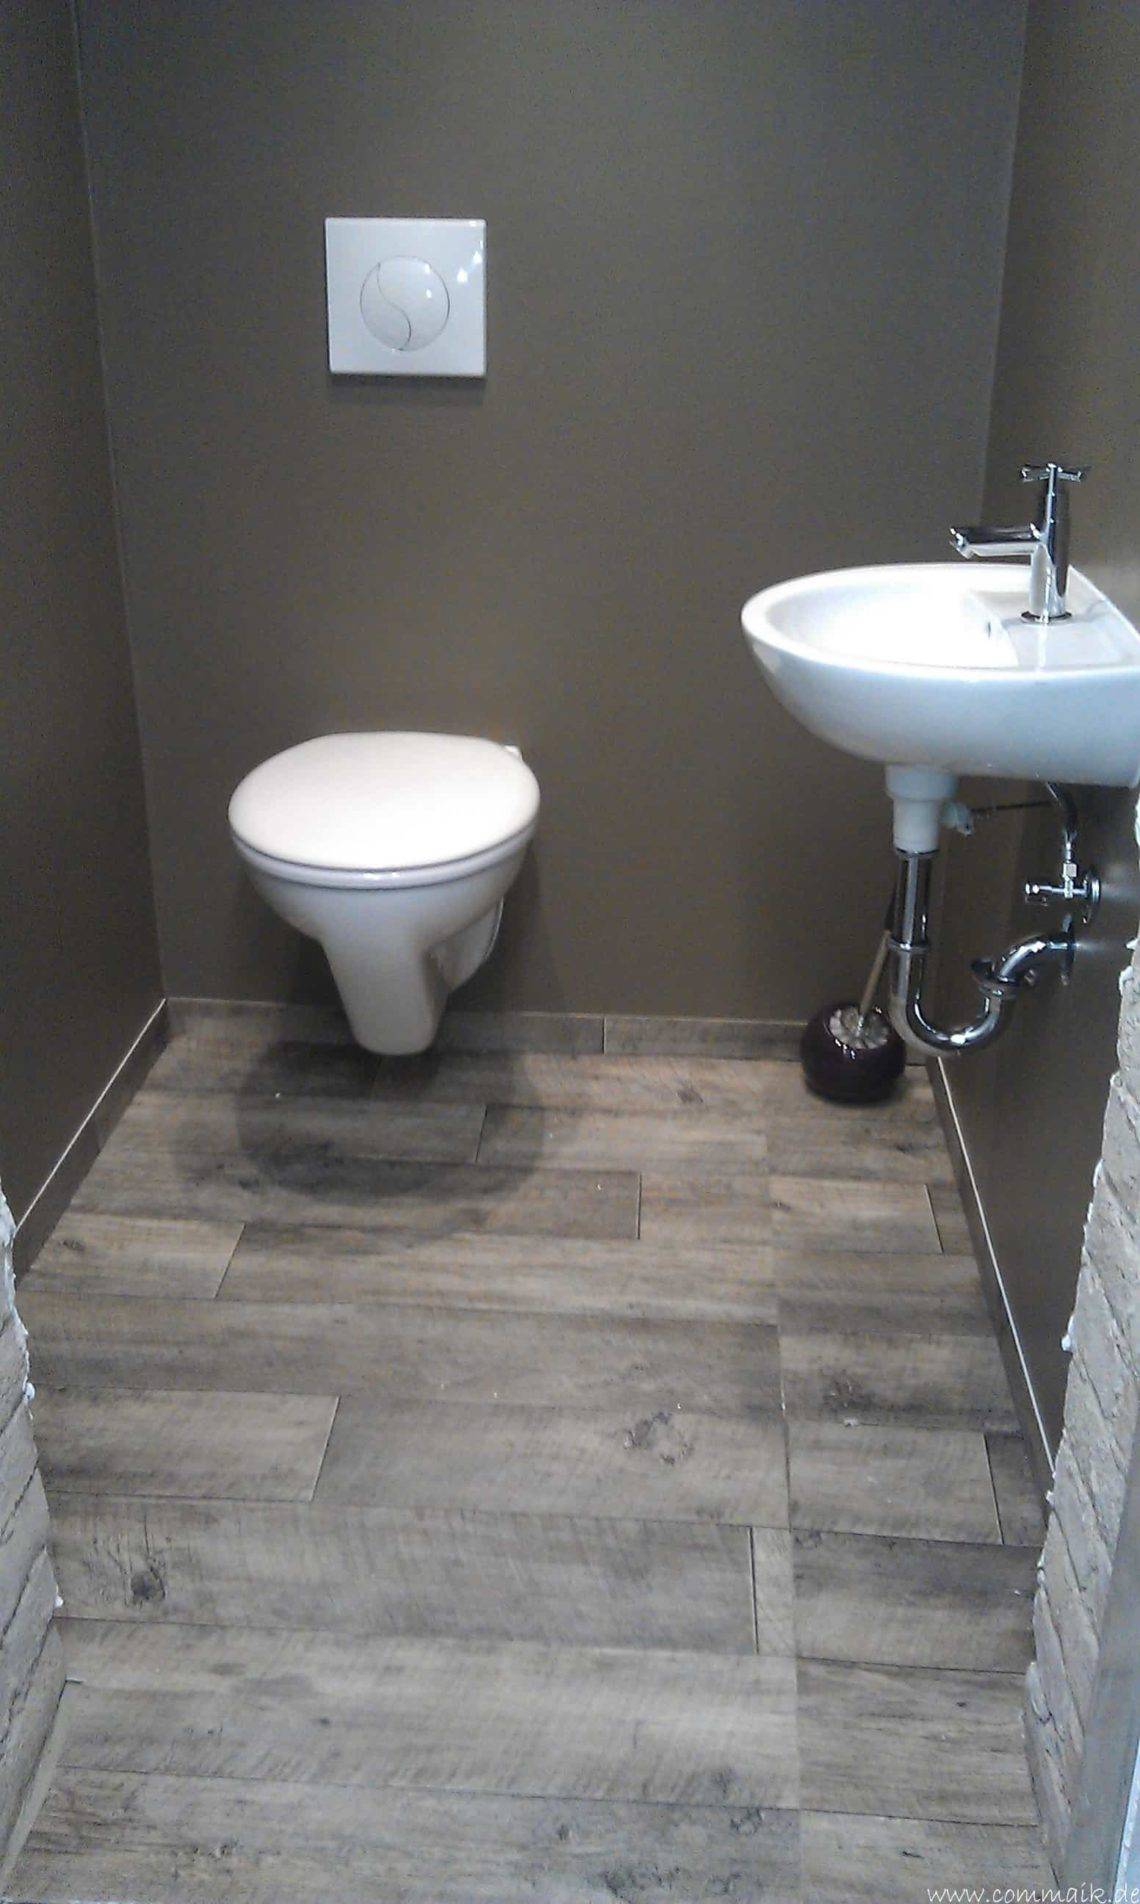 toilette im keller mit trockenbau 36 - Die Toilette im Keller wird endlich fertig